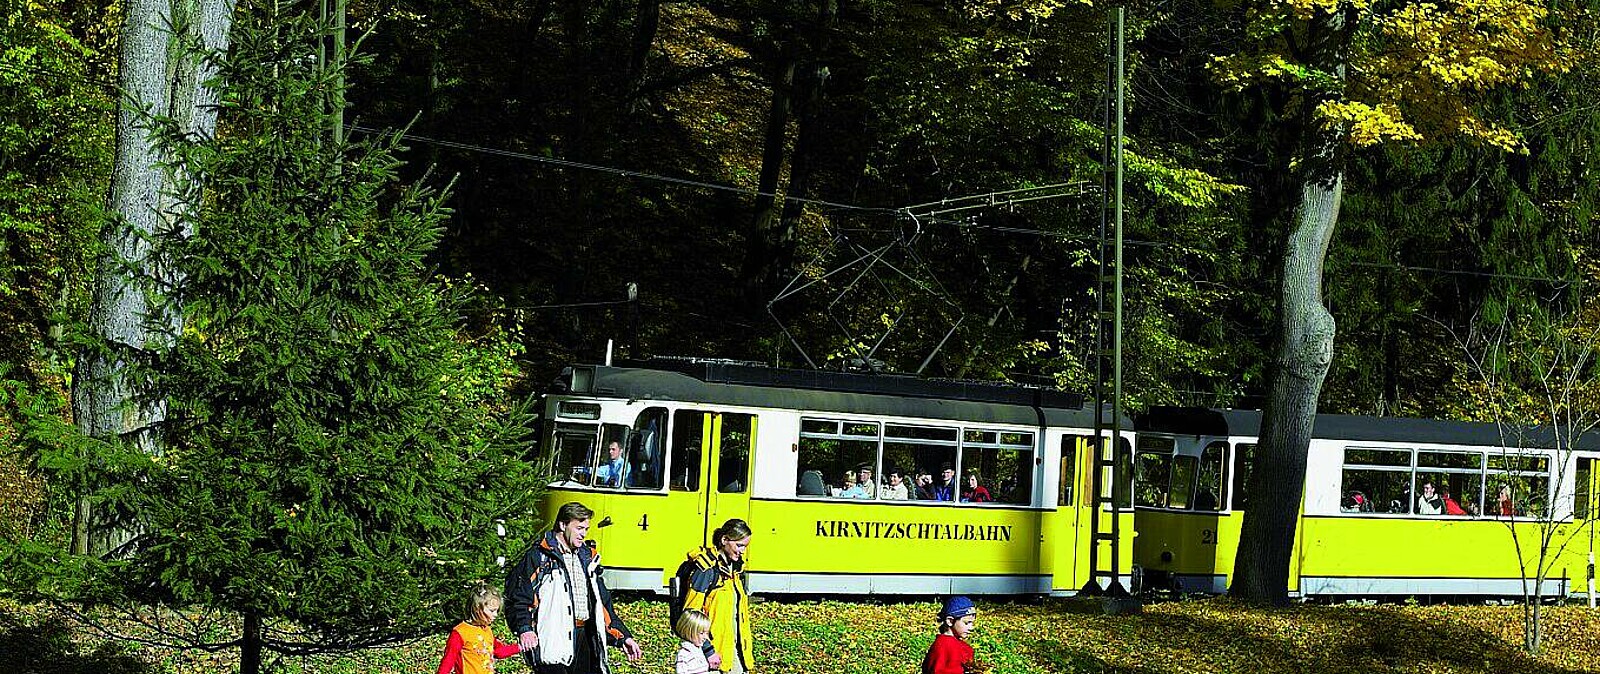 Auf etwa 8 Kilometern begleitet die meterspurige Bahn das Flüsschen Kirnitzsch auf seinem Lauf durch die bizarre Felsenwelt des Elbsandsteingebirges von Bad Schandau zum Lichtenhainer Wasserfall.